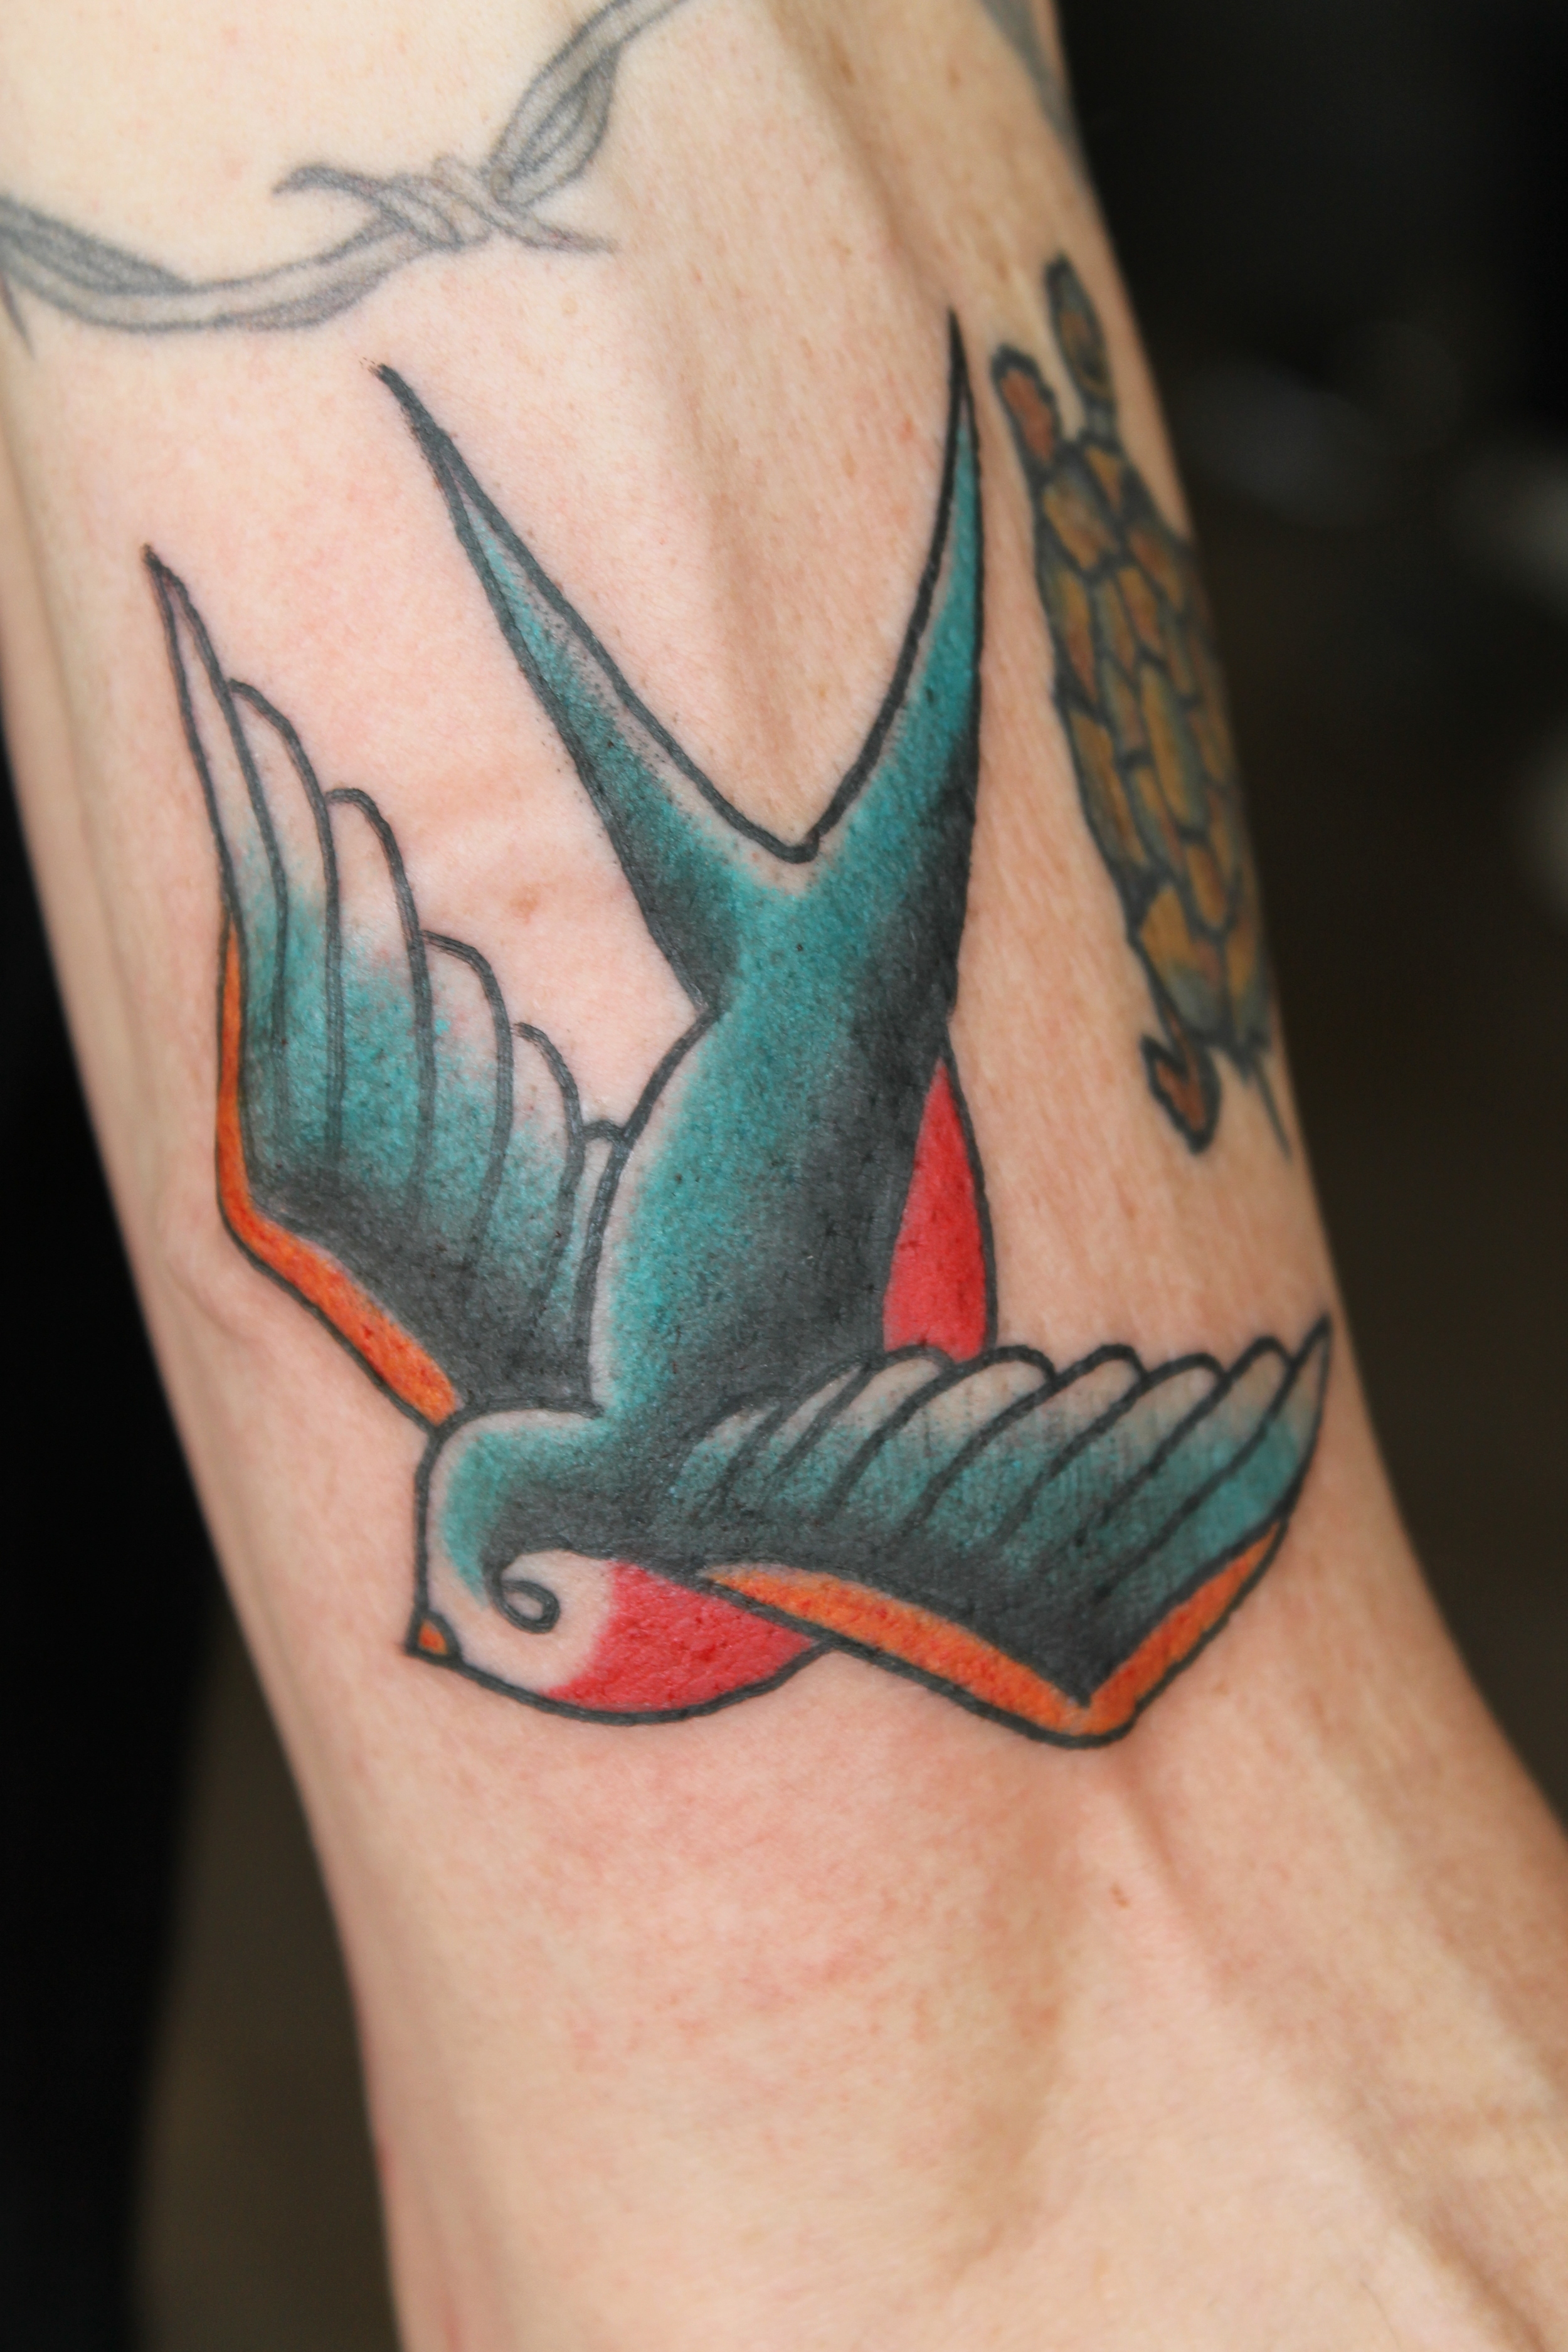  Tattoo by Scott Updike on Rob 